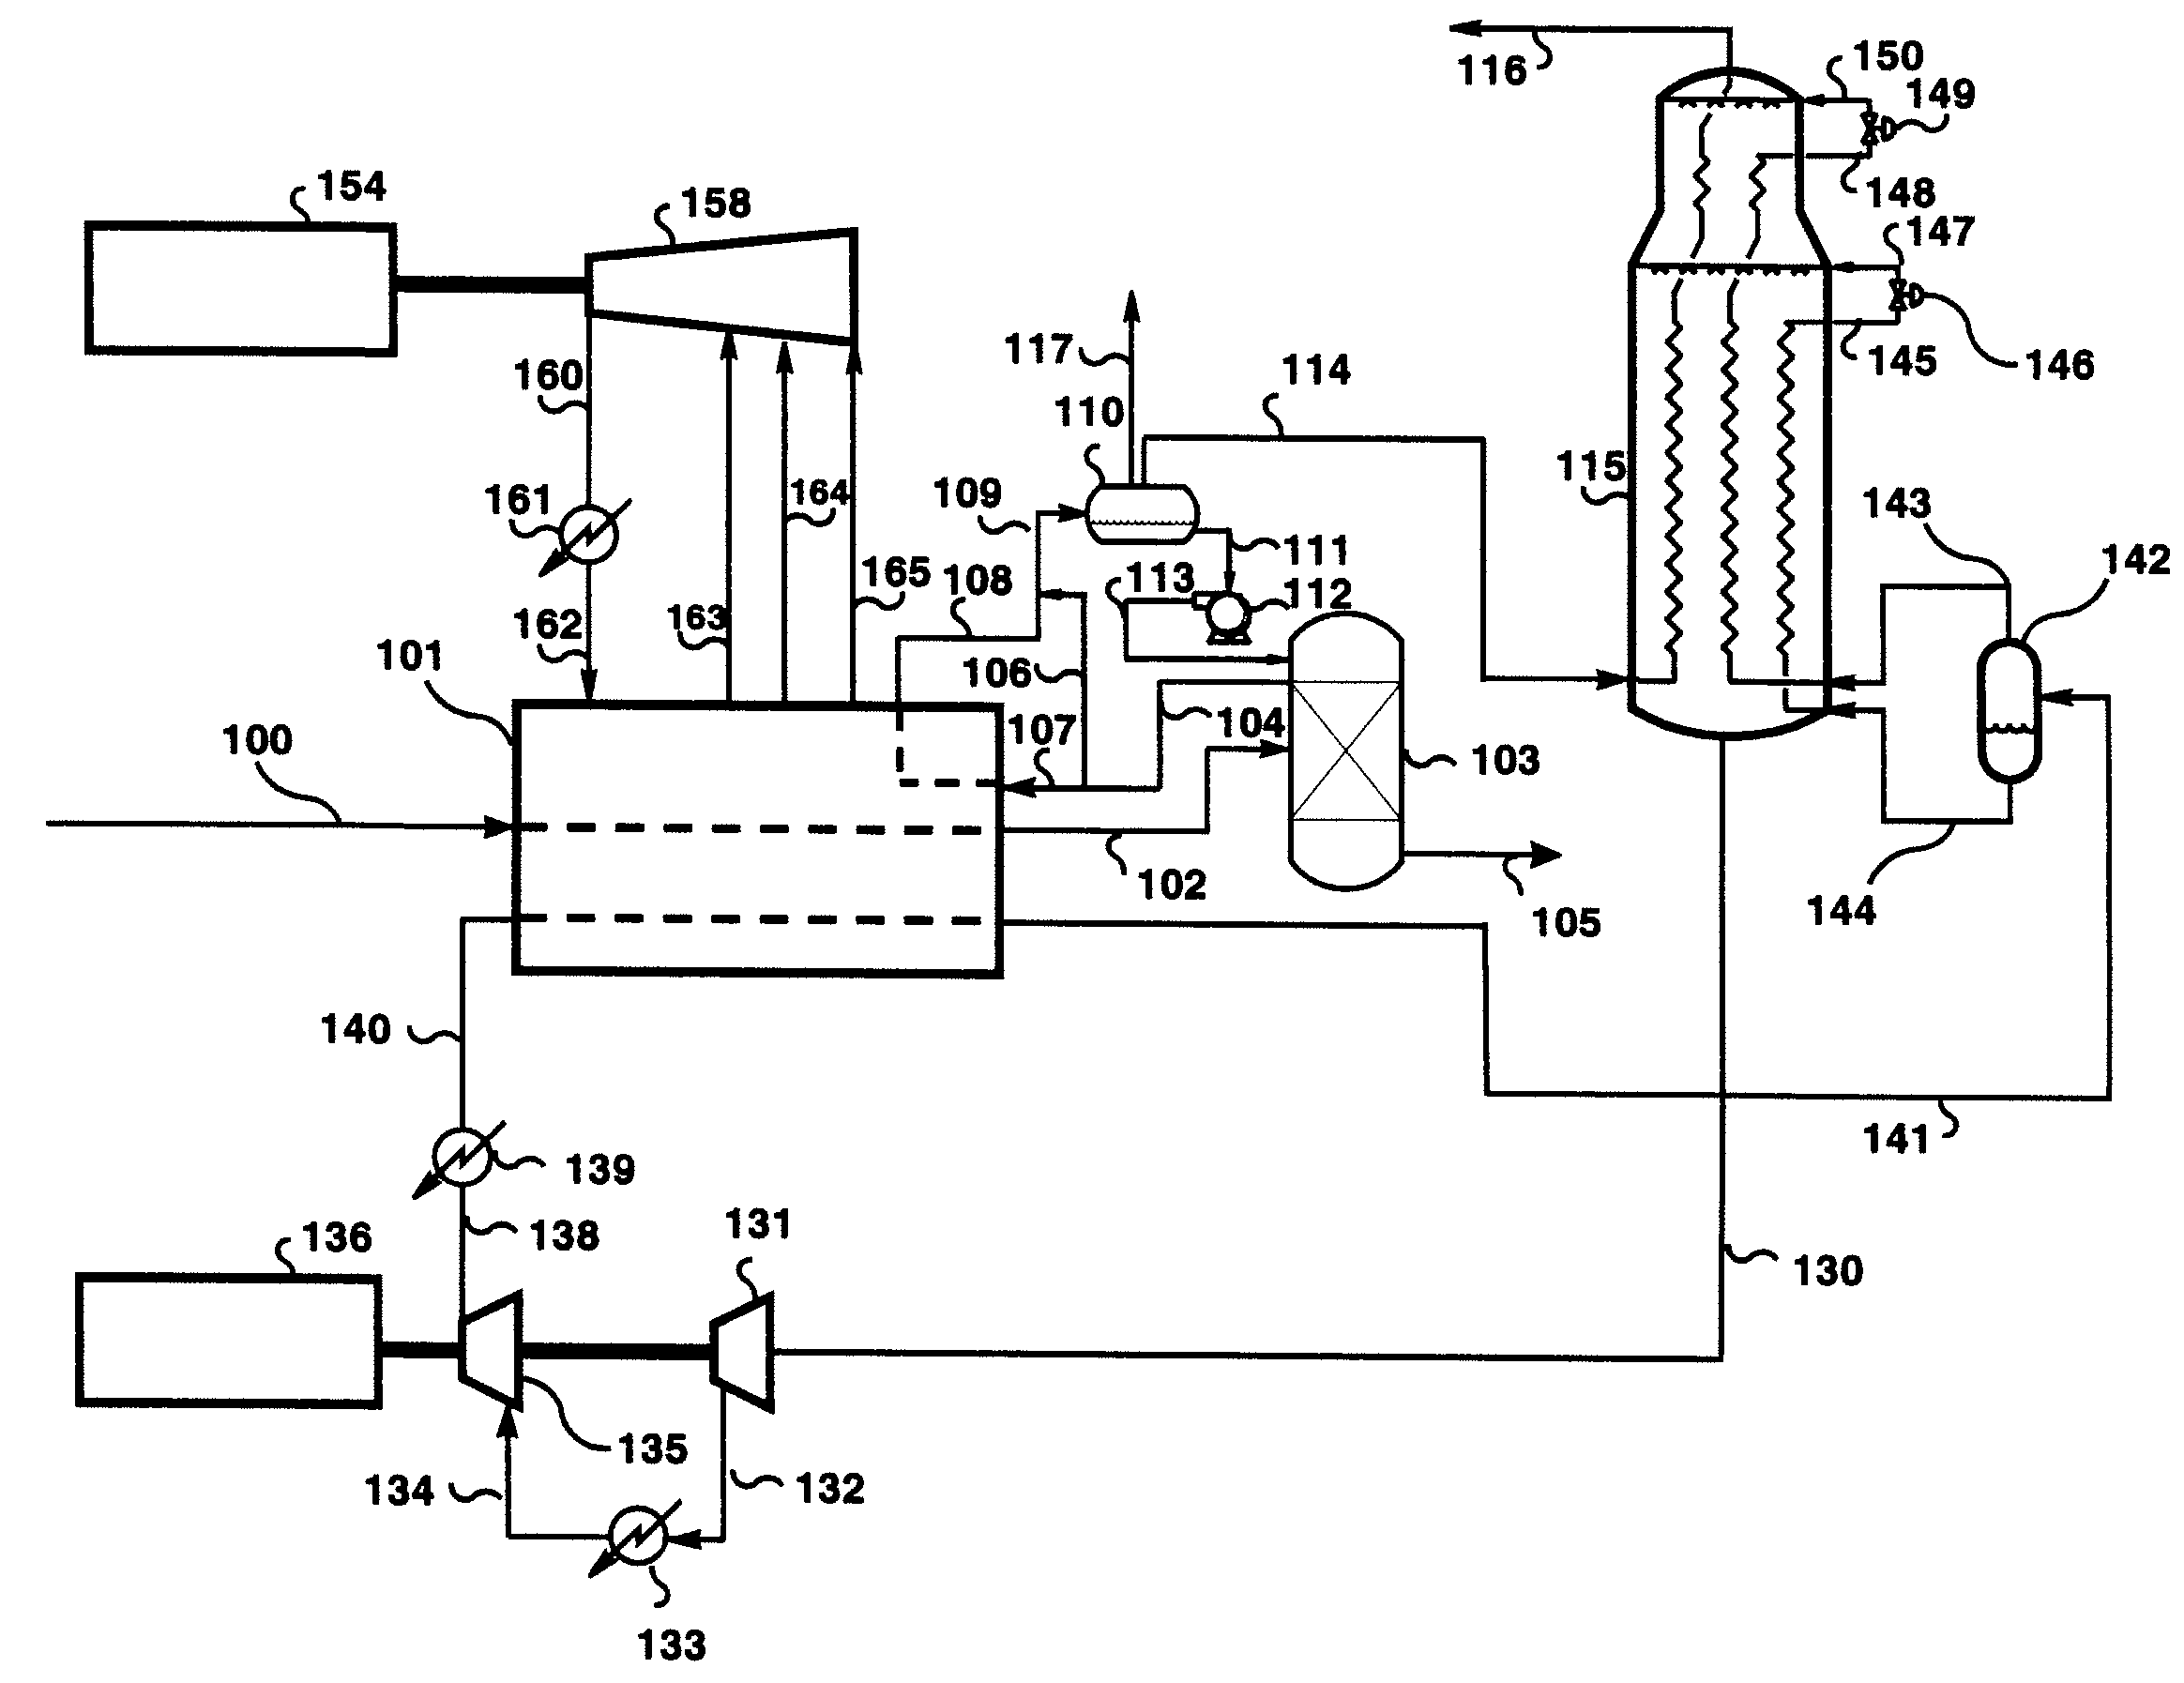 Pre-Cooled Liquefaction Process